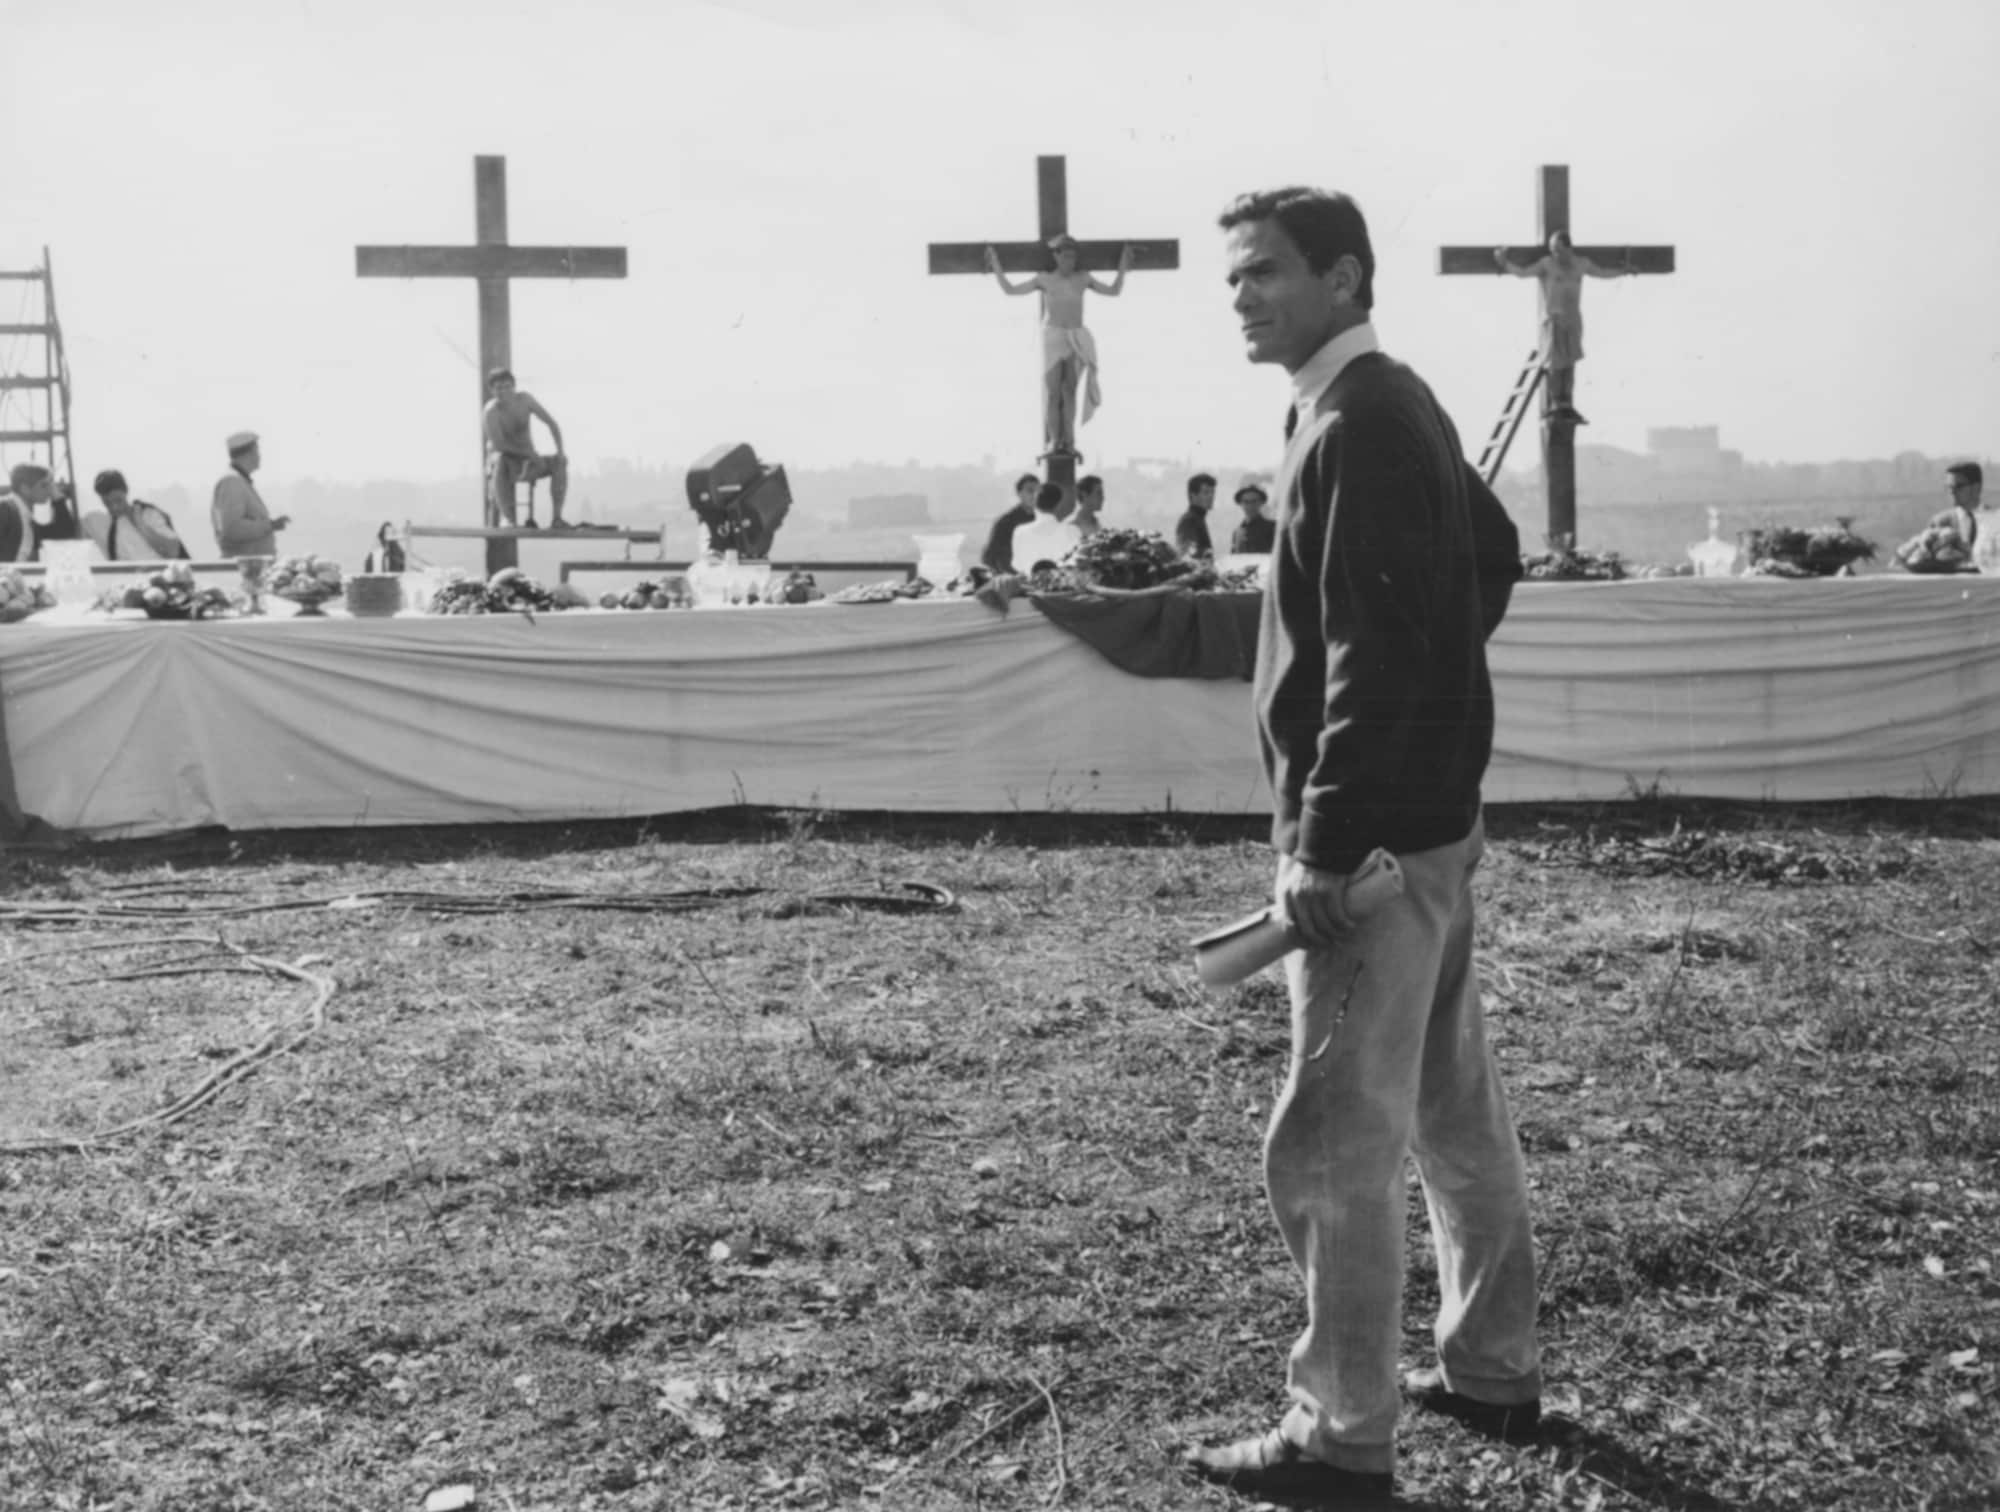 Il regista italiano Pier Paolo Pasolini di fronte a una scena biblica durante le riprese del film Il Vangelo secondo Matteo nel 1962. (Foto di Keystone / Hulton Archive)